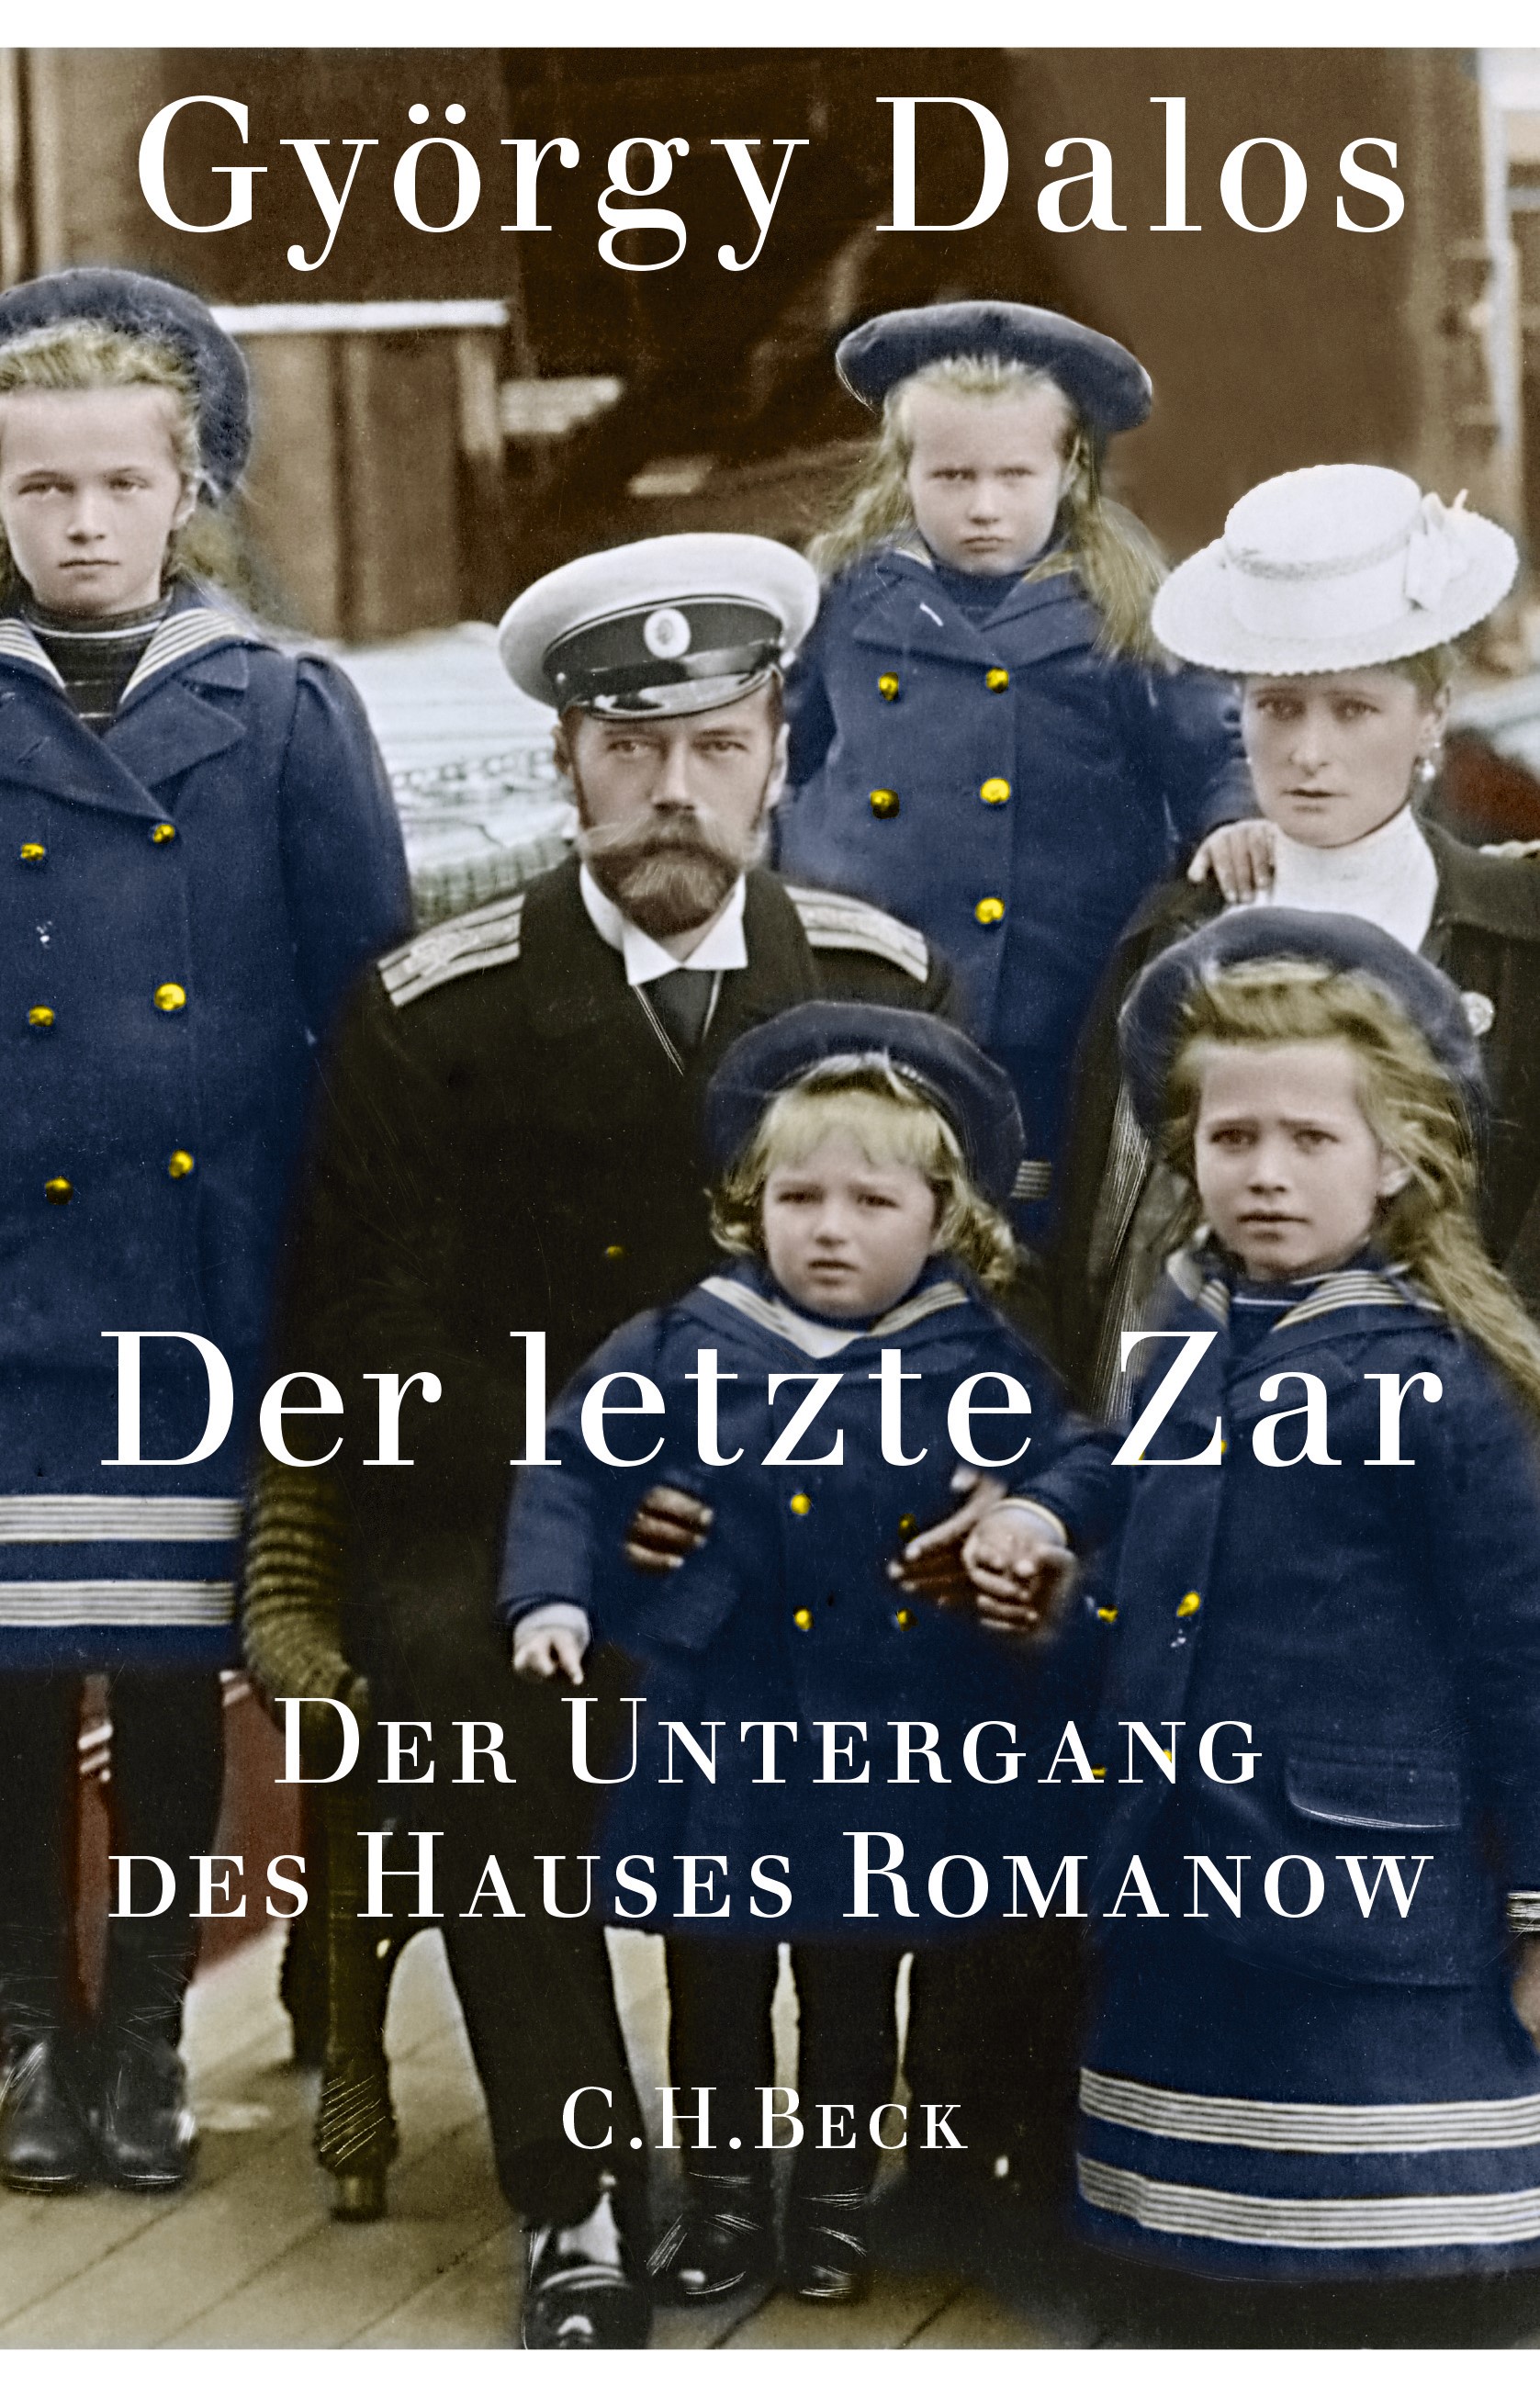 Cover: Dalos, György, Der letzte Zar